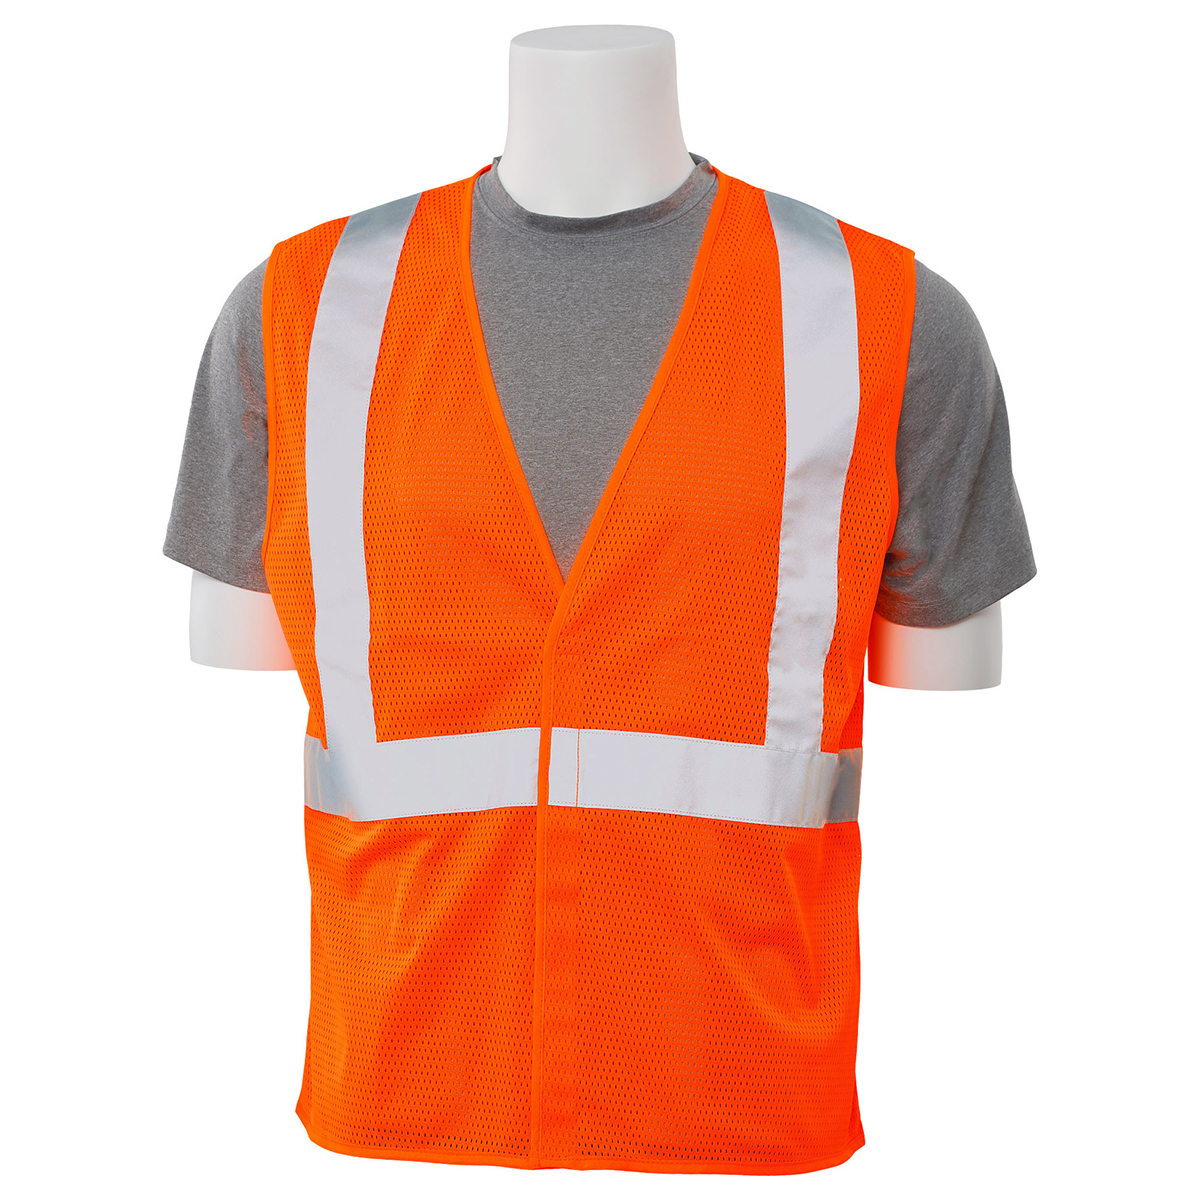 Mesh Safety Vest Hi Viz Orange 3X